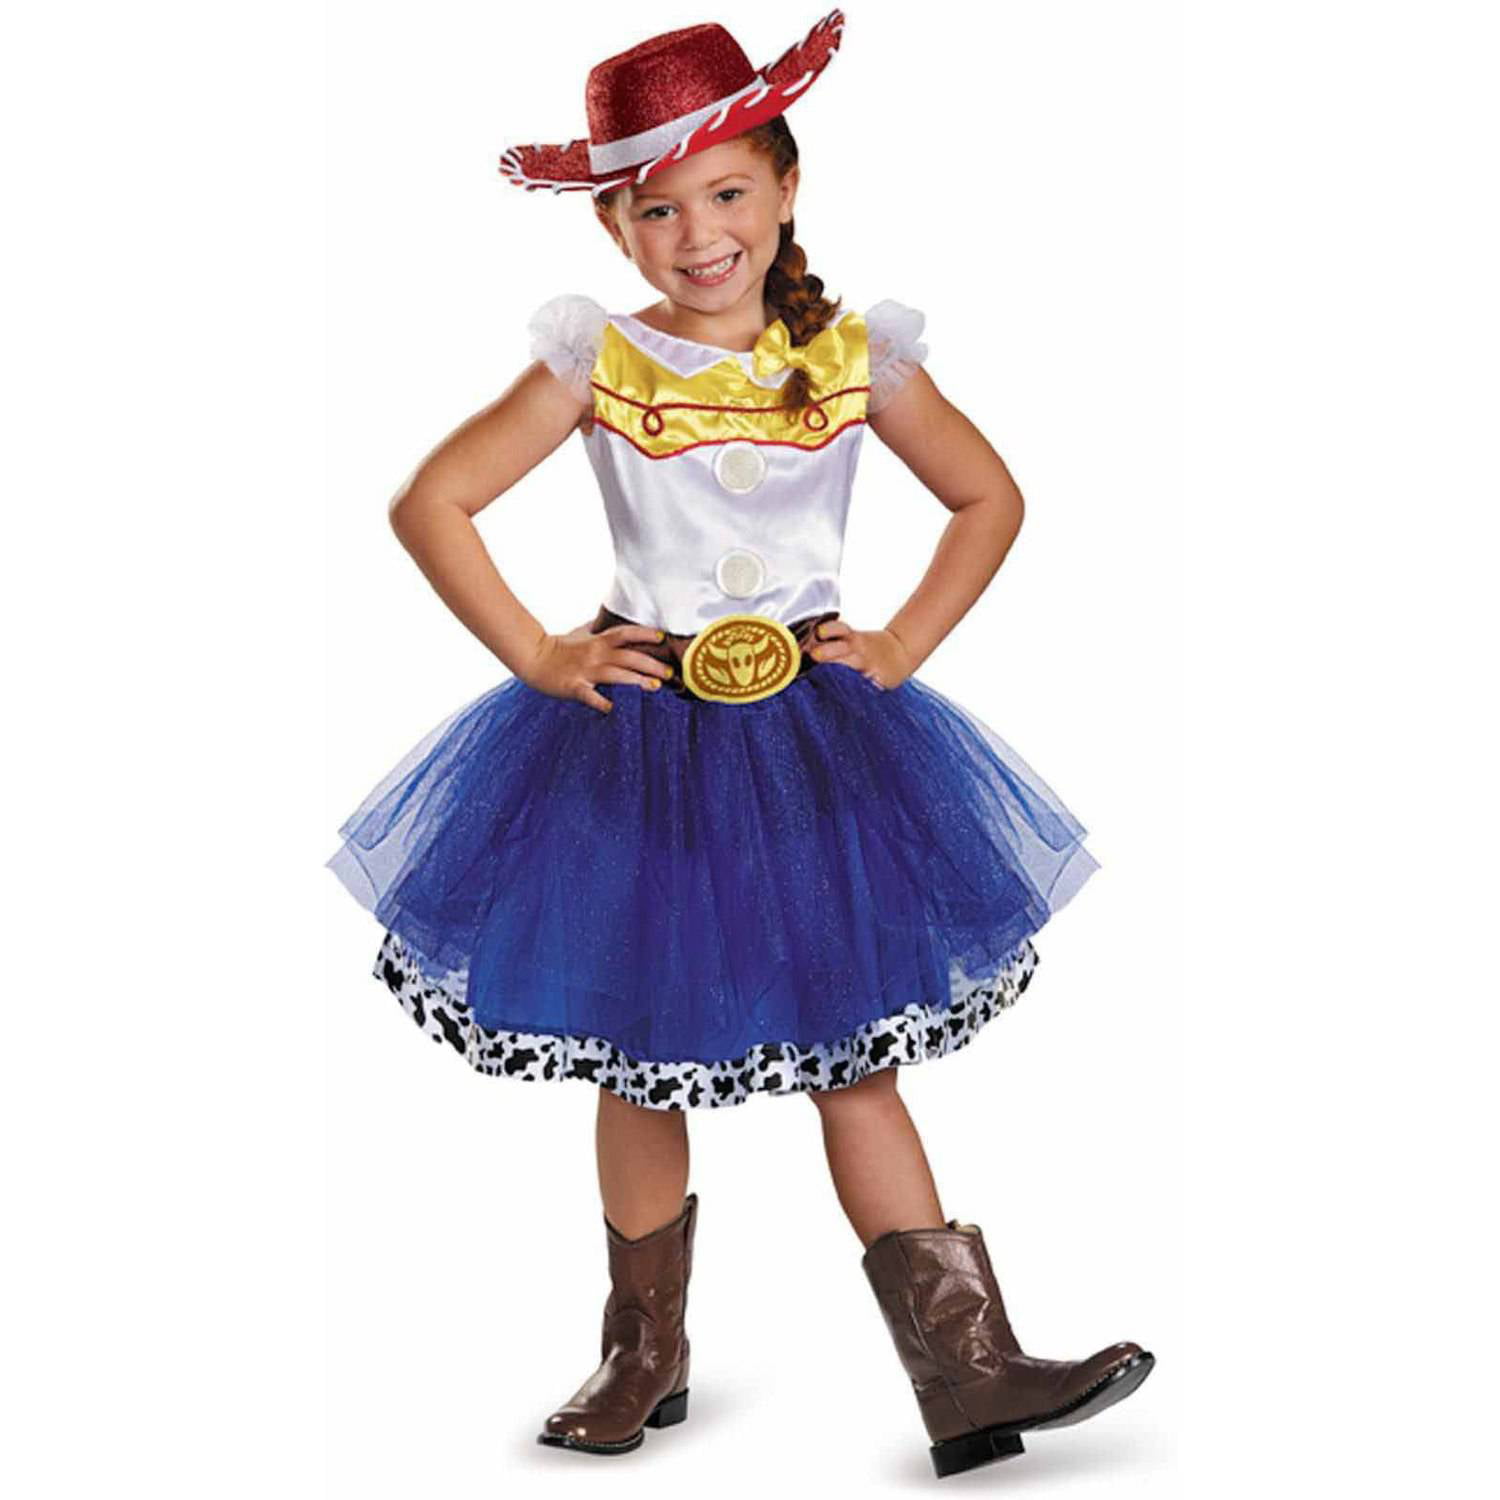 Buy Jessie Toy Story Costume, Jessie Toy Story Dress, Jessie Tutu